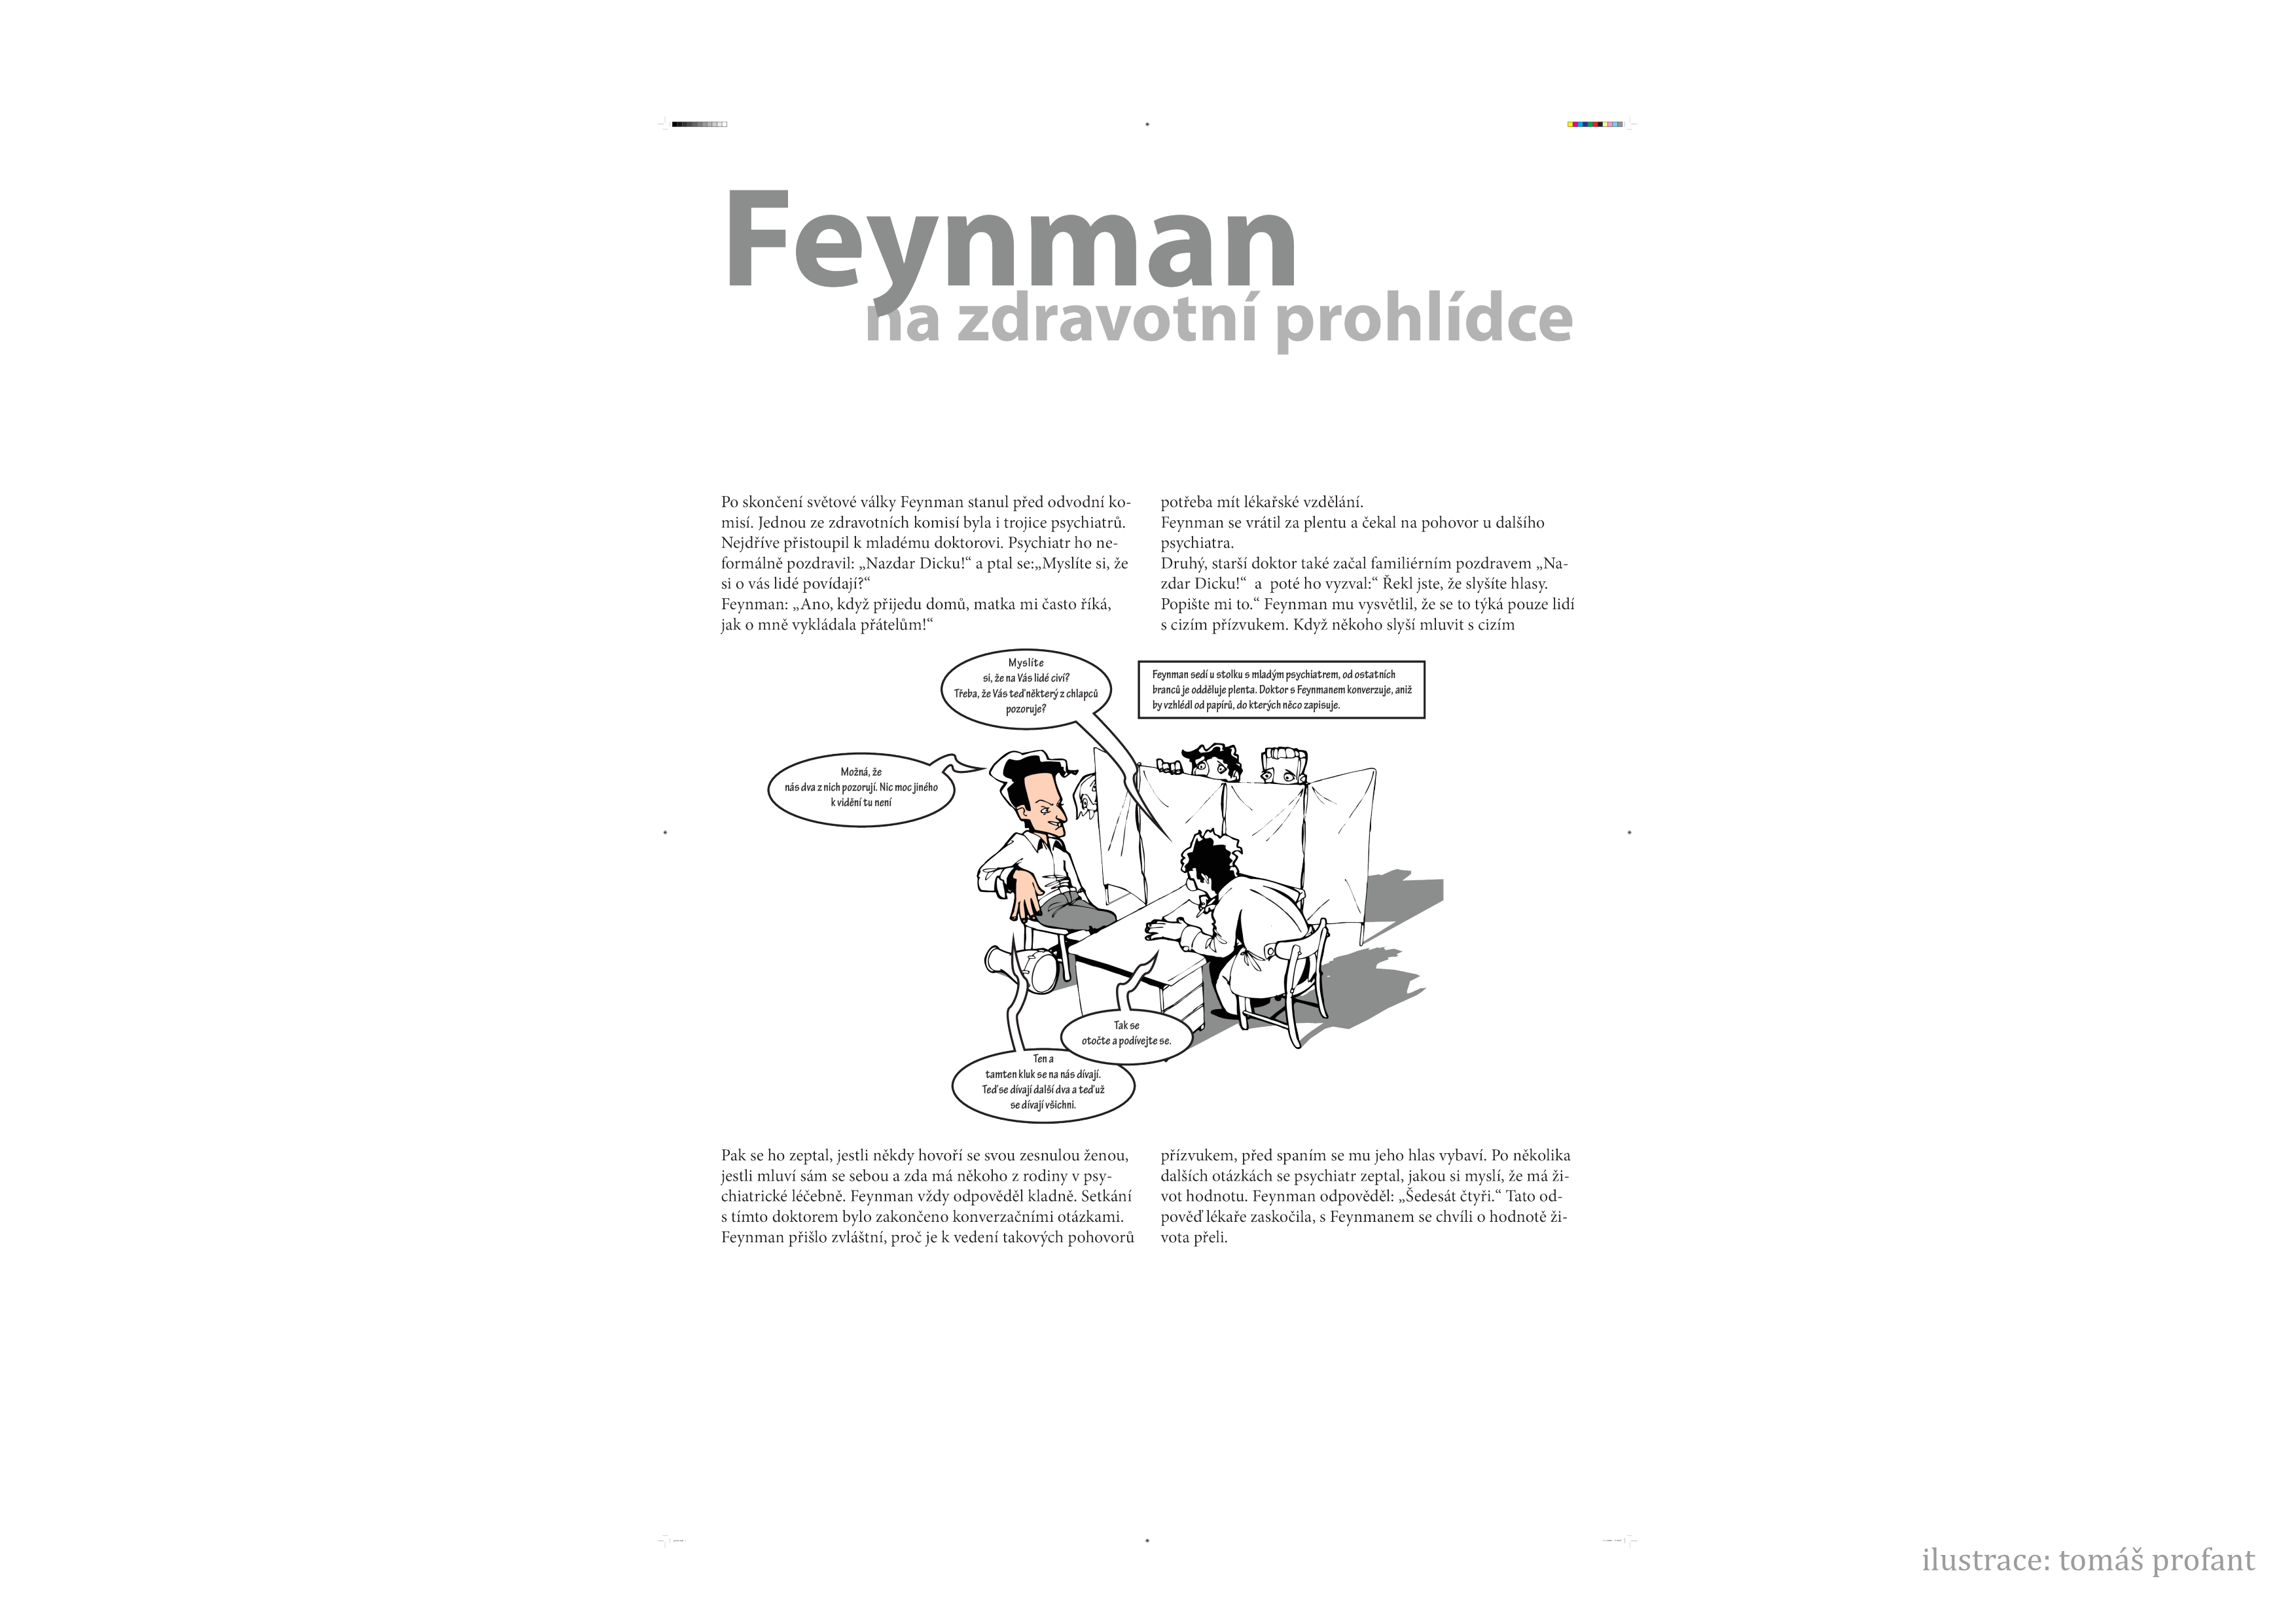 _images/feynman-str%C3%A1nka008.png